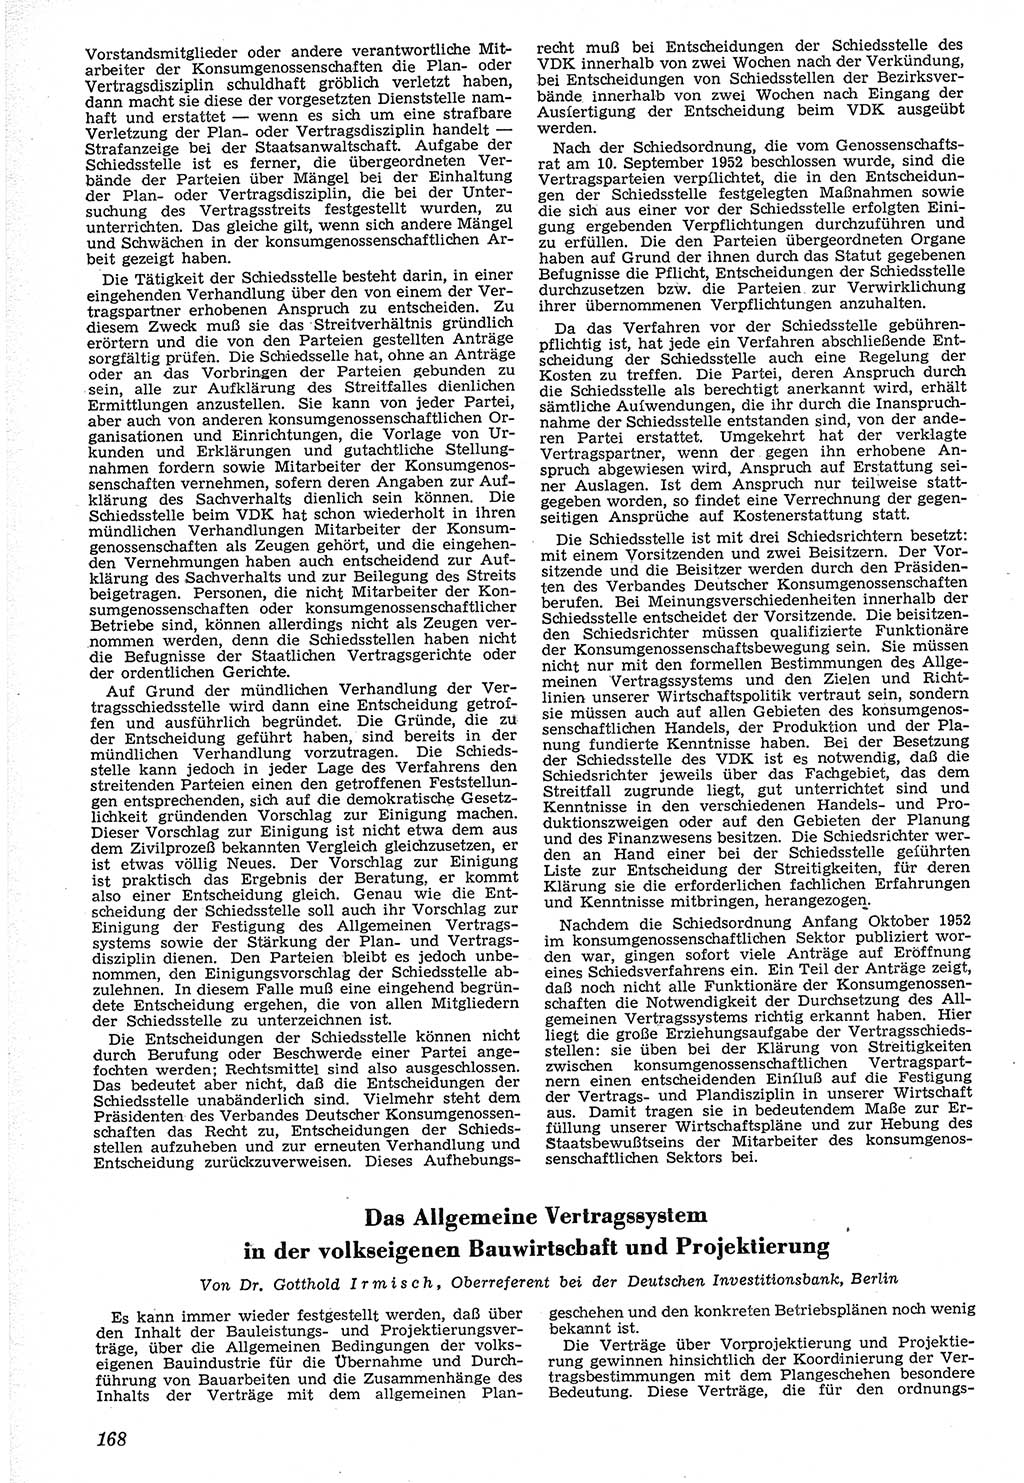 Neue Justiz (NJ), Zeitschrift für Recht und Rechtswissenschaft [Deutsche Demokratische Republik (DDR)], 7. Jahrgang 1953, Seite 168 (NJ DDR 1953, S. 168)